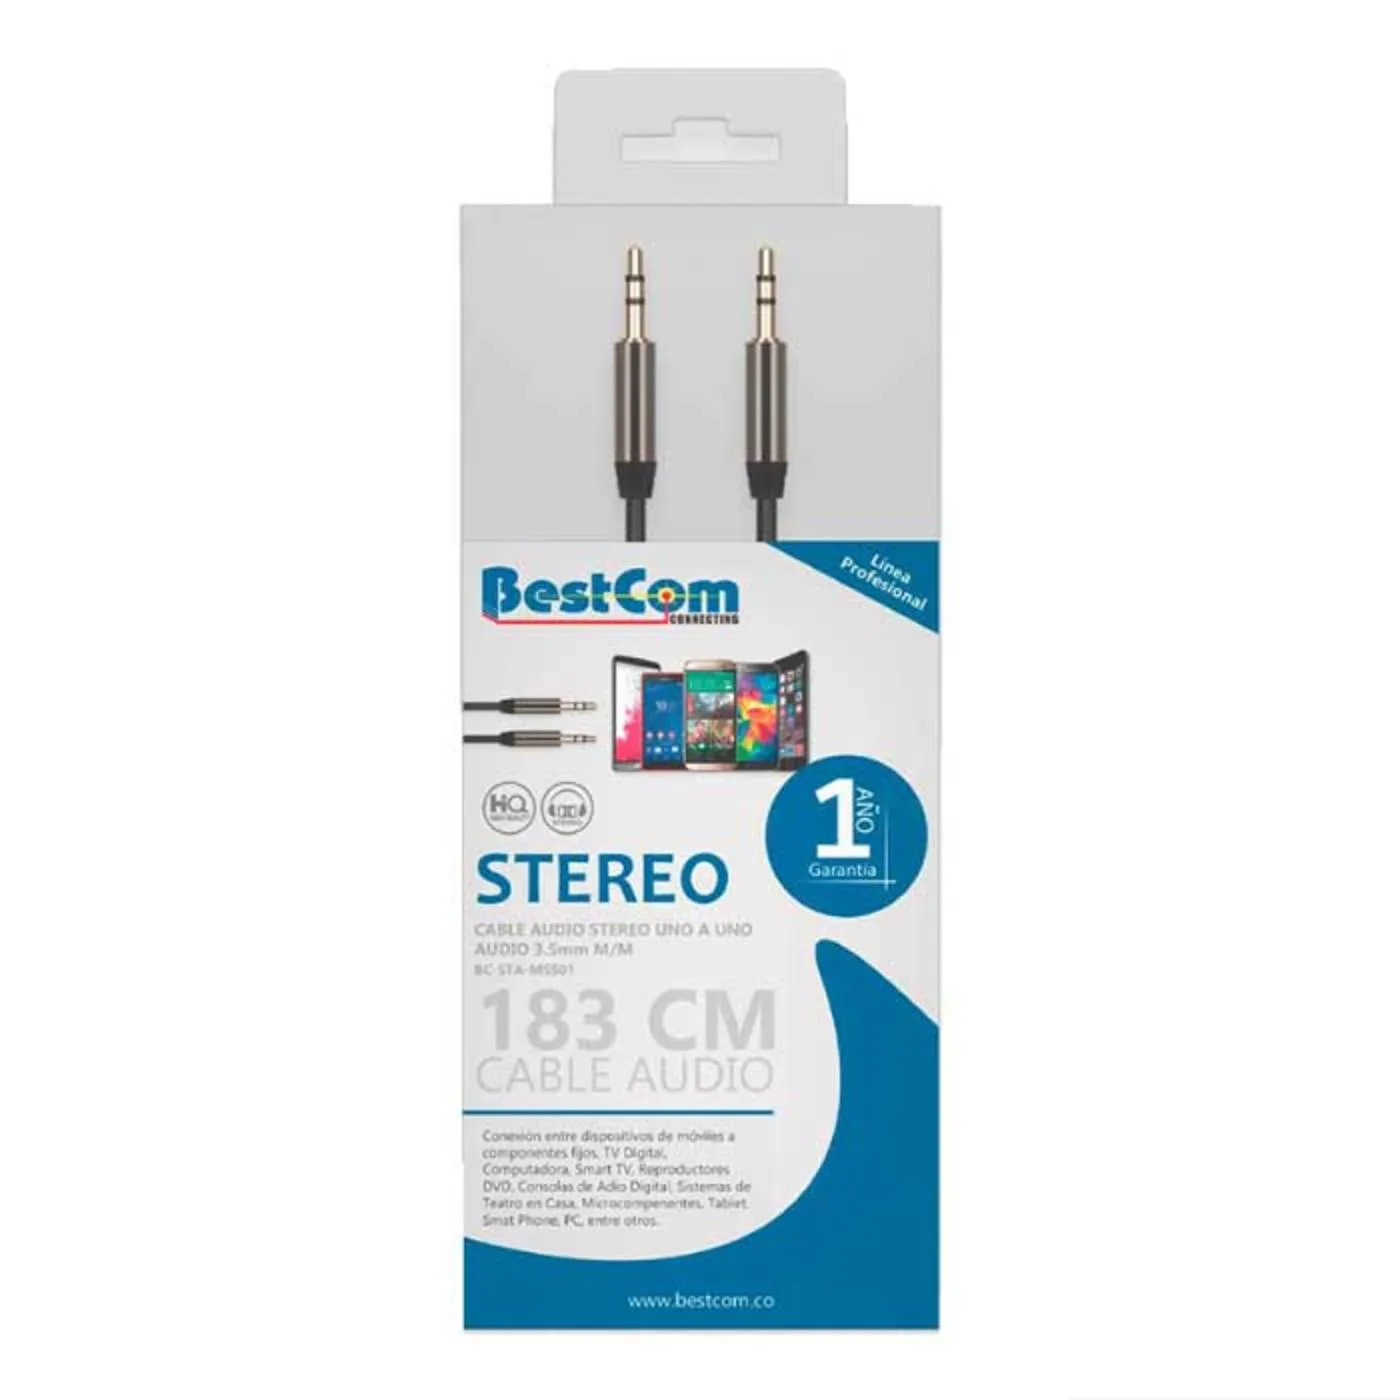 Cable de Audio Stereo BESTCOM Uno a Uno 3.5 mm 1.83 Metros